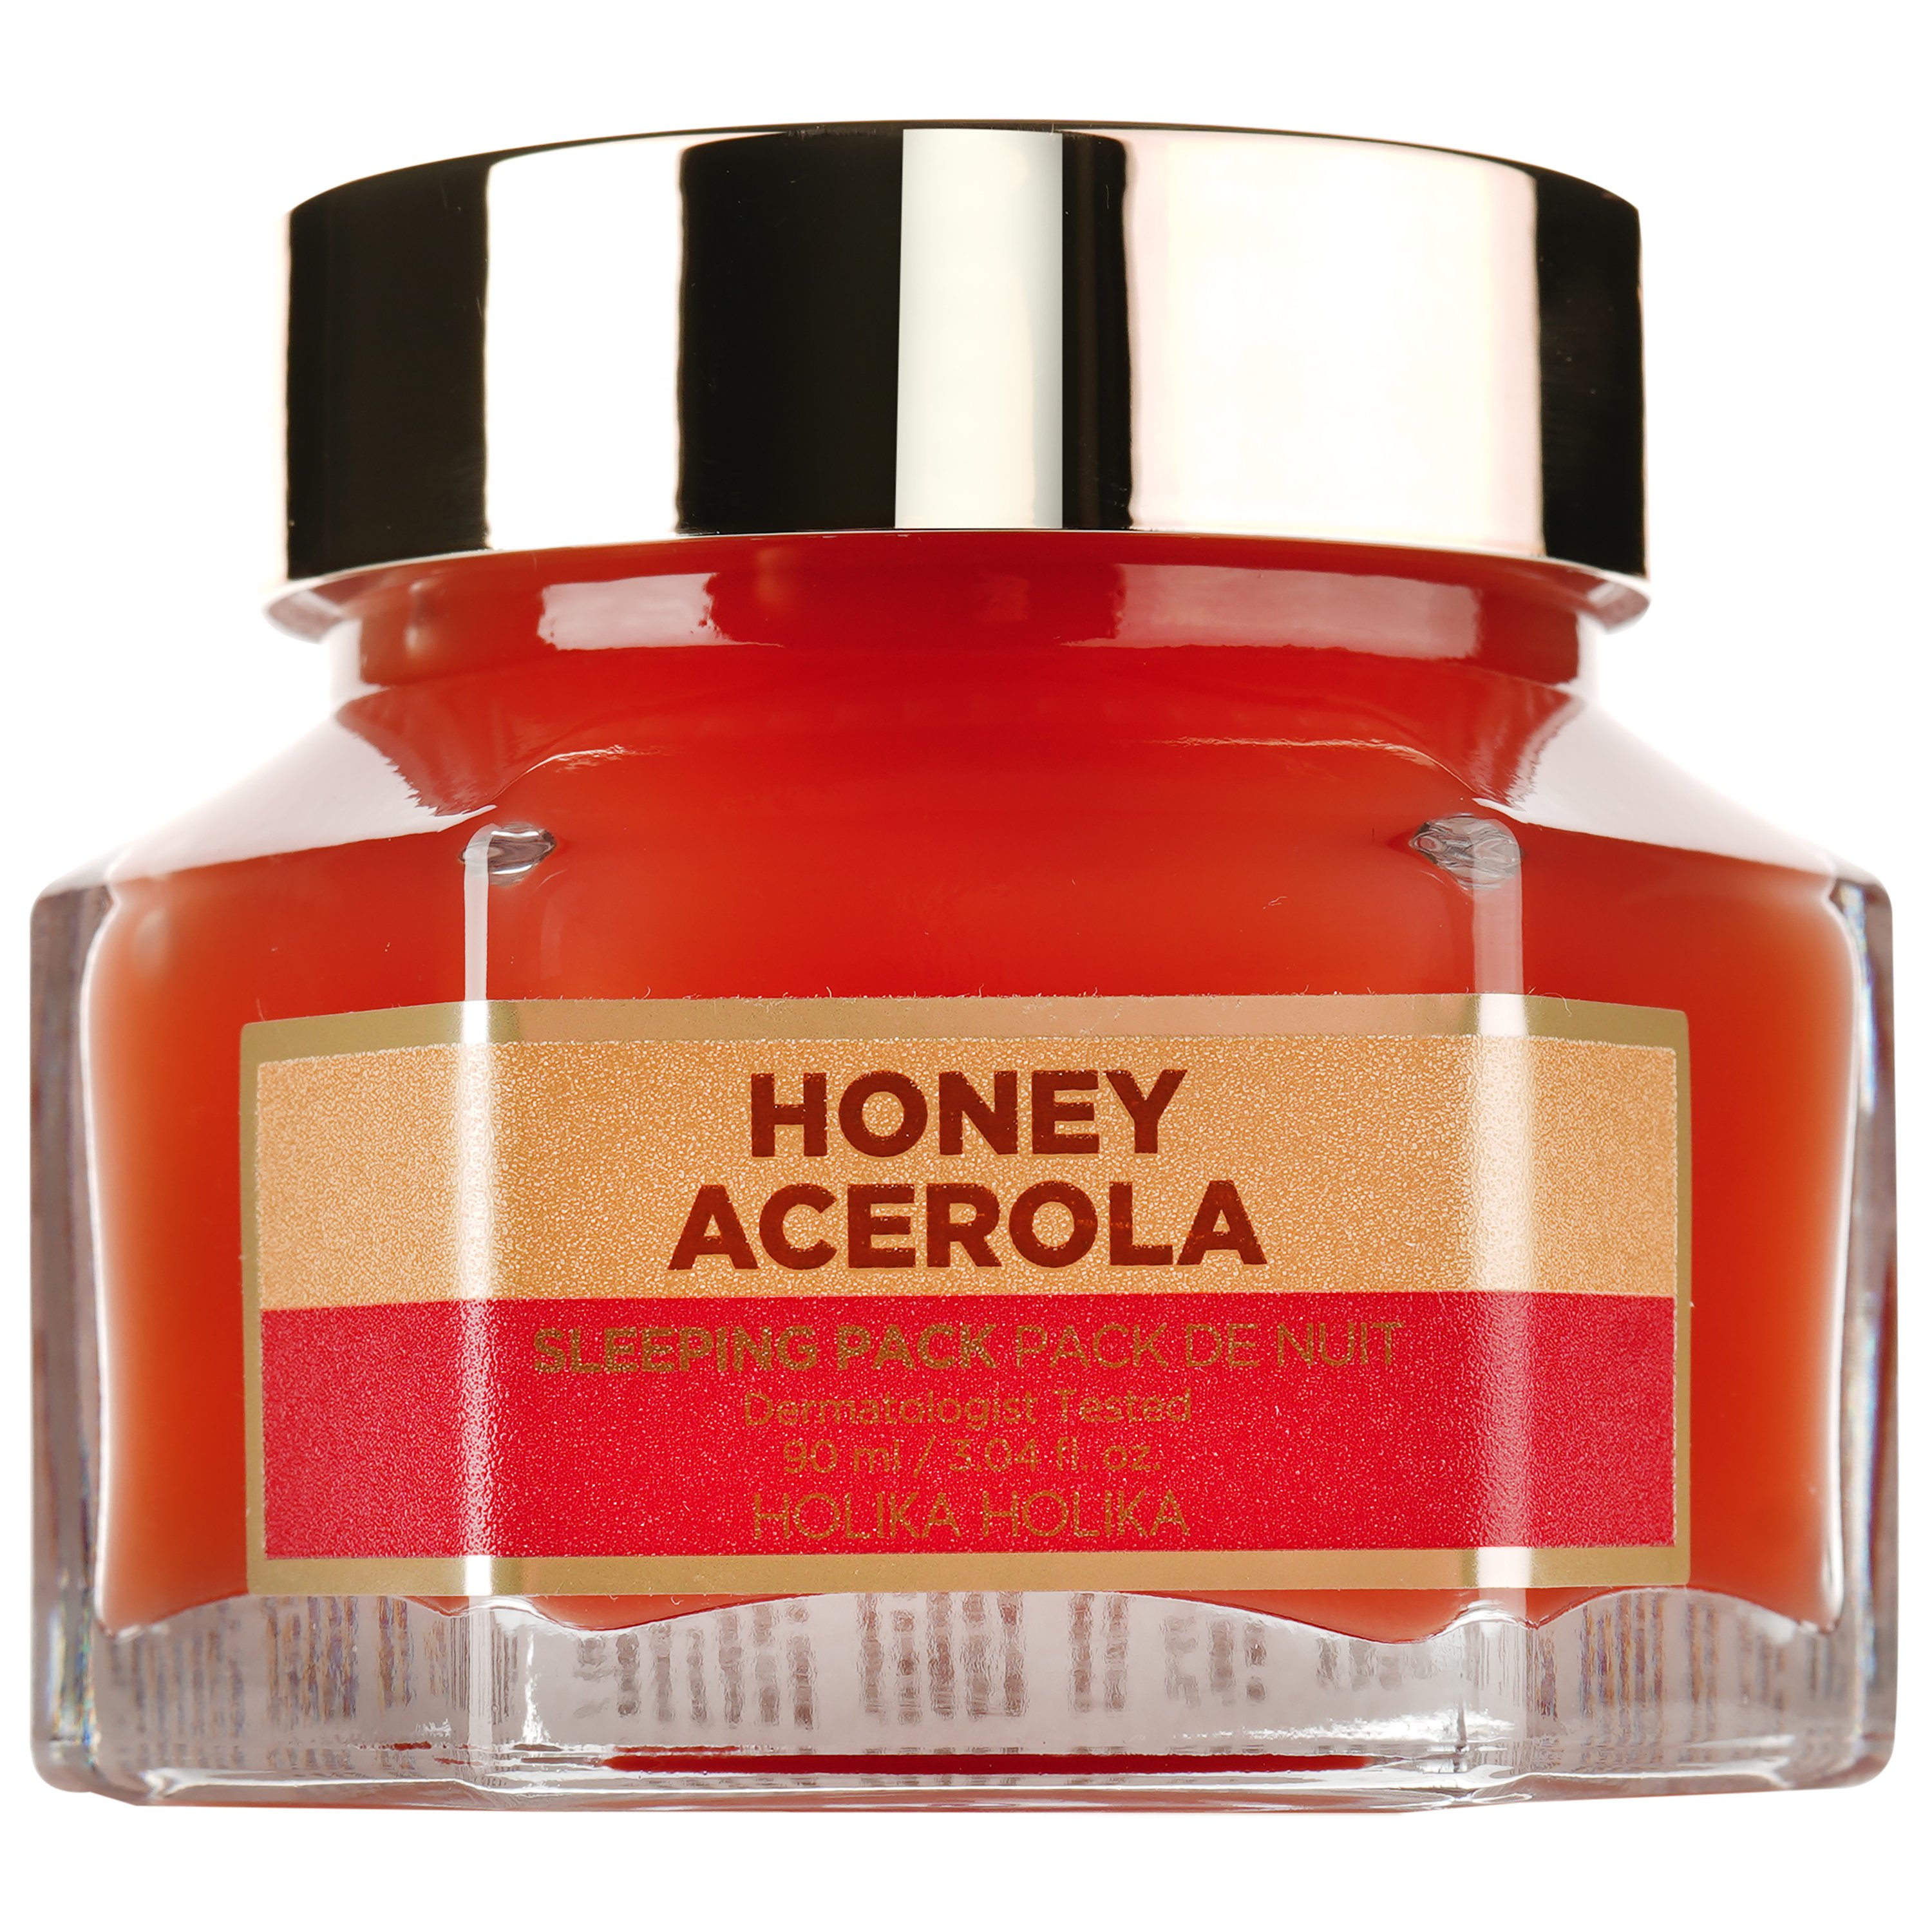 Ночная маска Holika Holika Honey Sleeping Pack Acerola Honey Мед и ацерола, 90 мл - фото 1